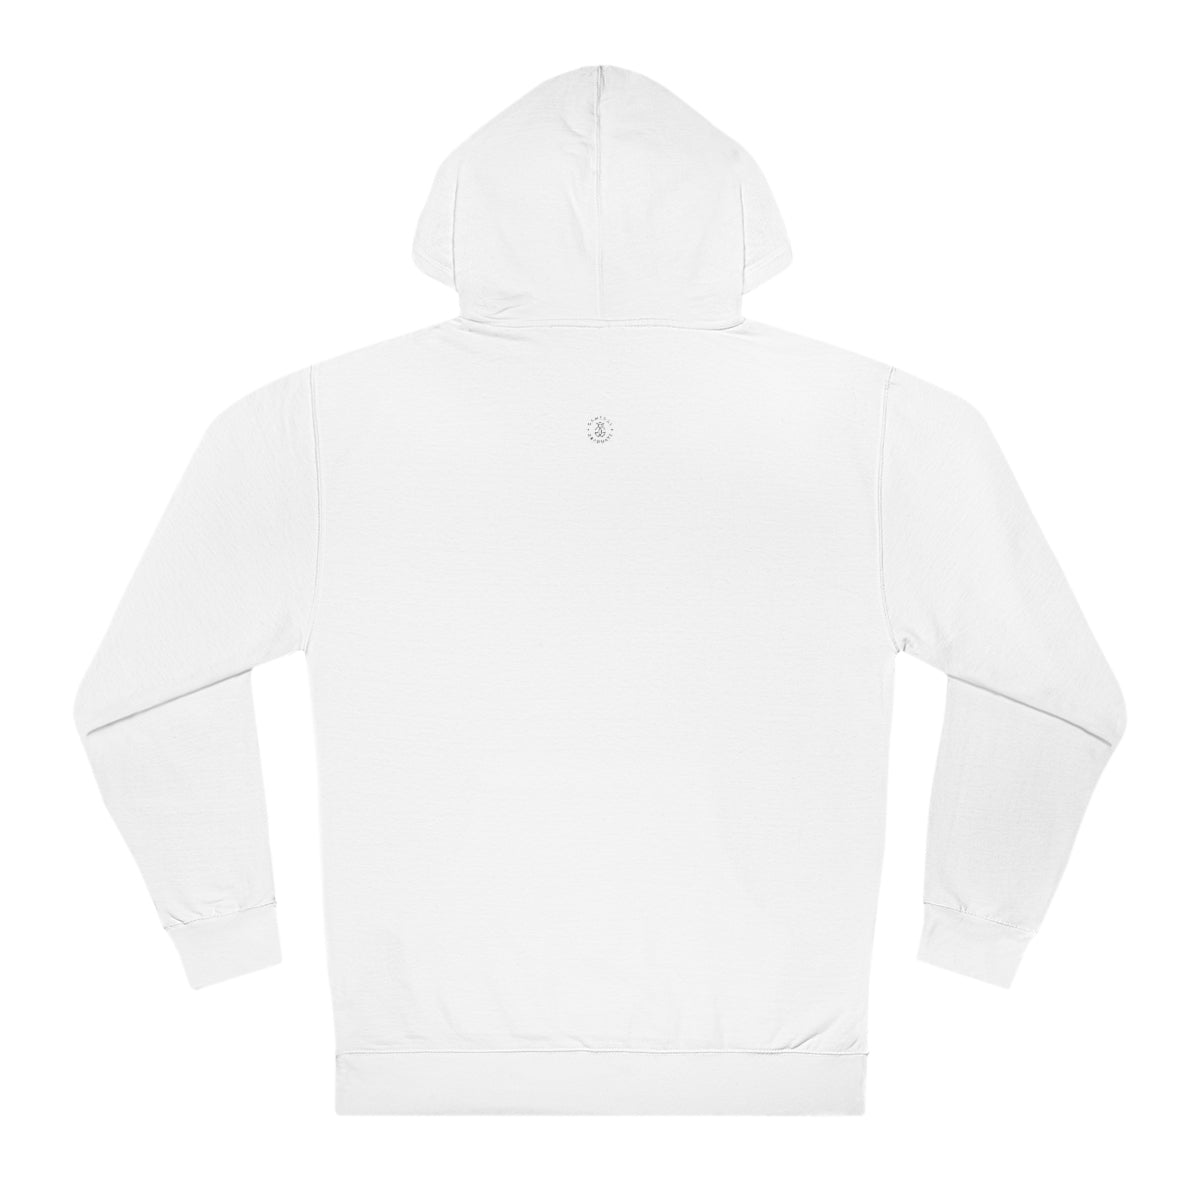 Florida State Hooded Sweatshirt - GG - ITC